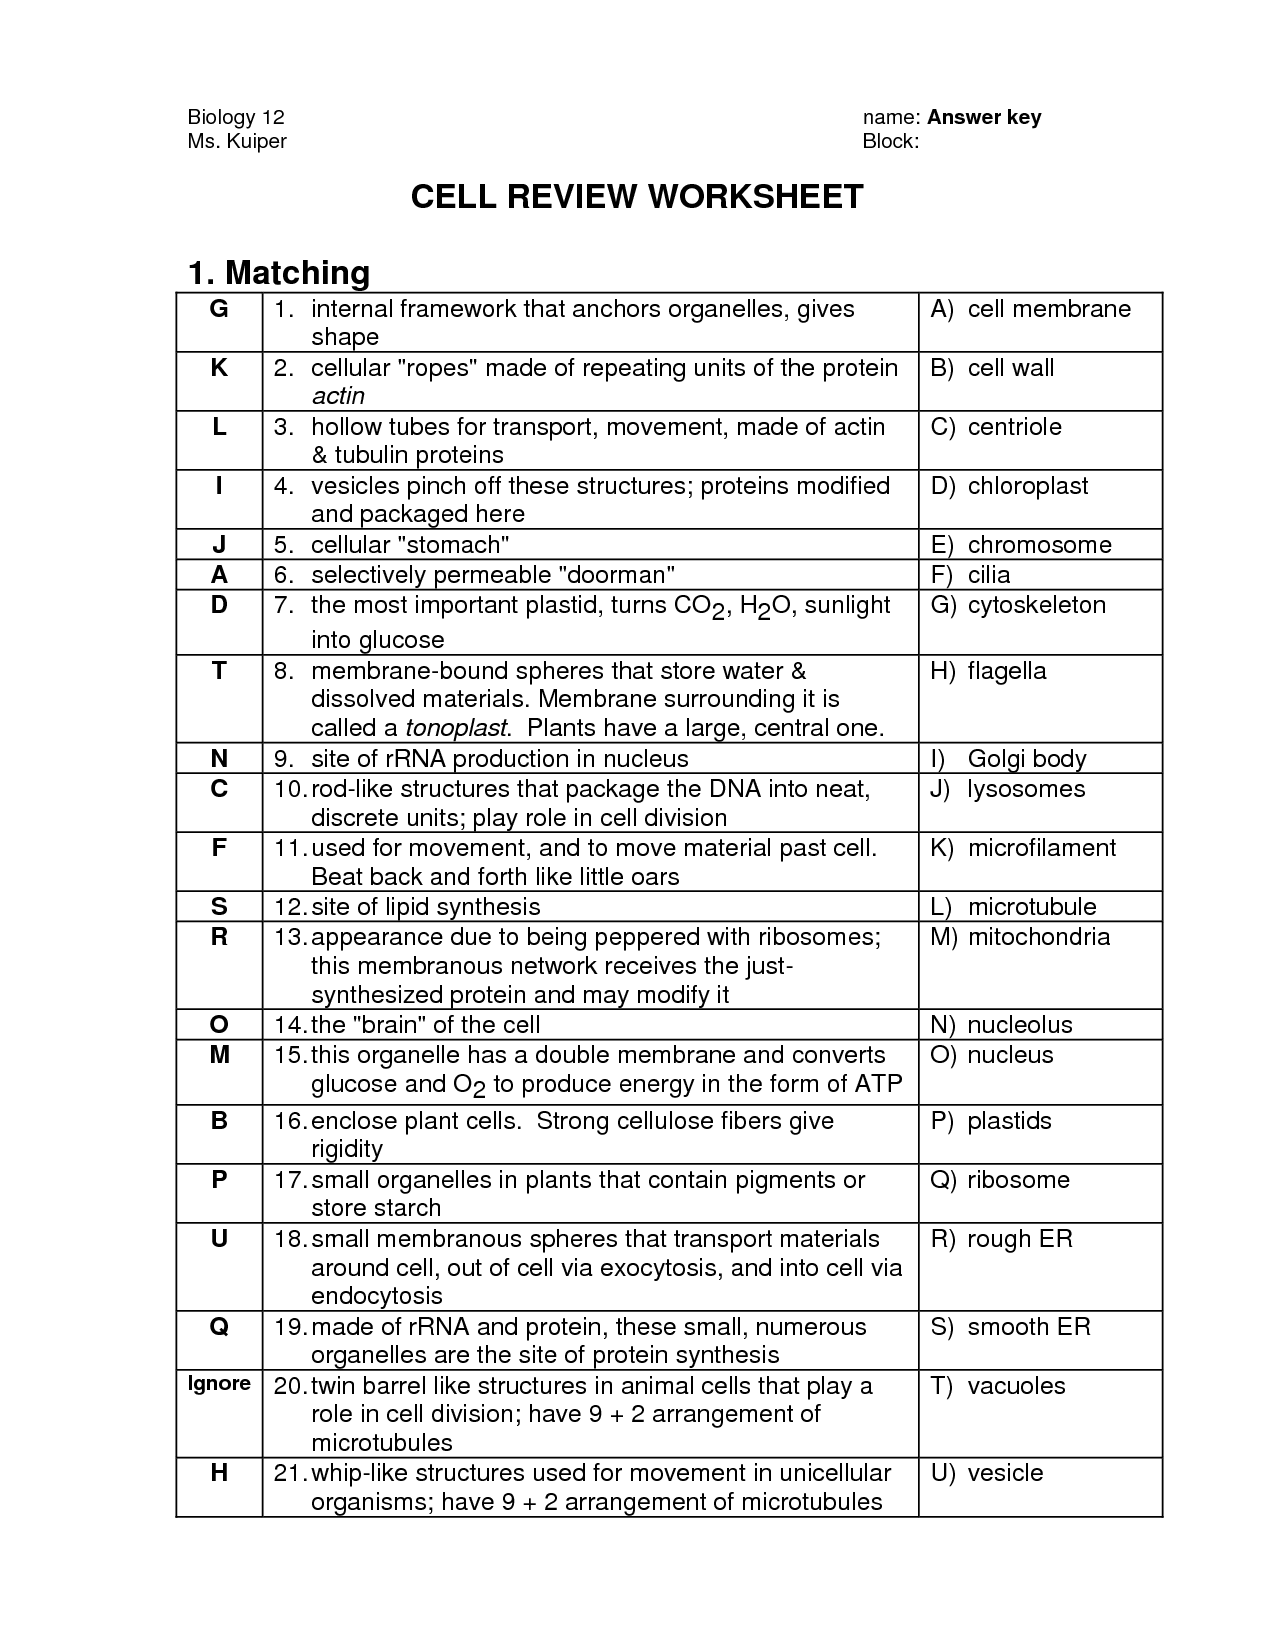 17-best-images-of-cell-organelle-worksheet-pdf-cell-organelle-quiz-worksheet-cell-organelles